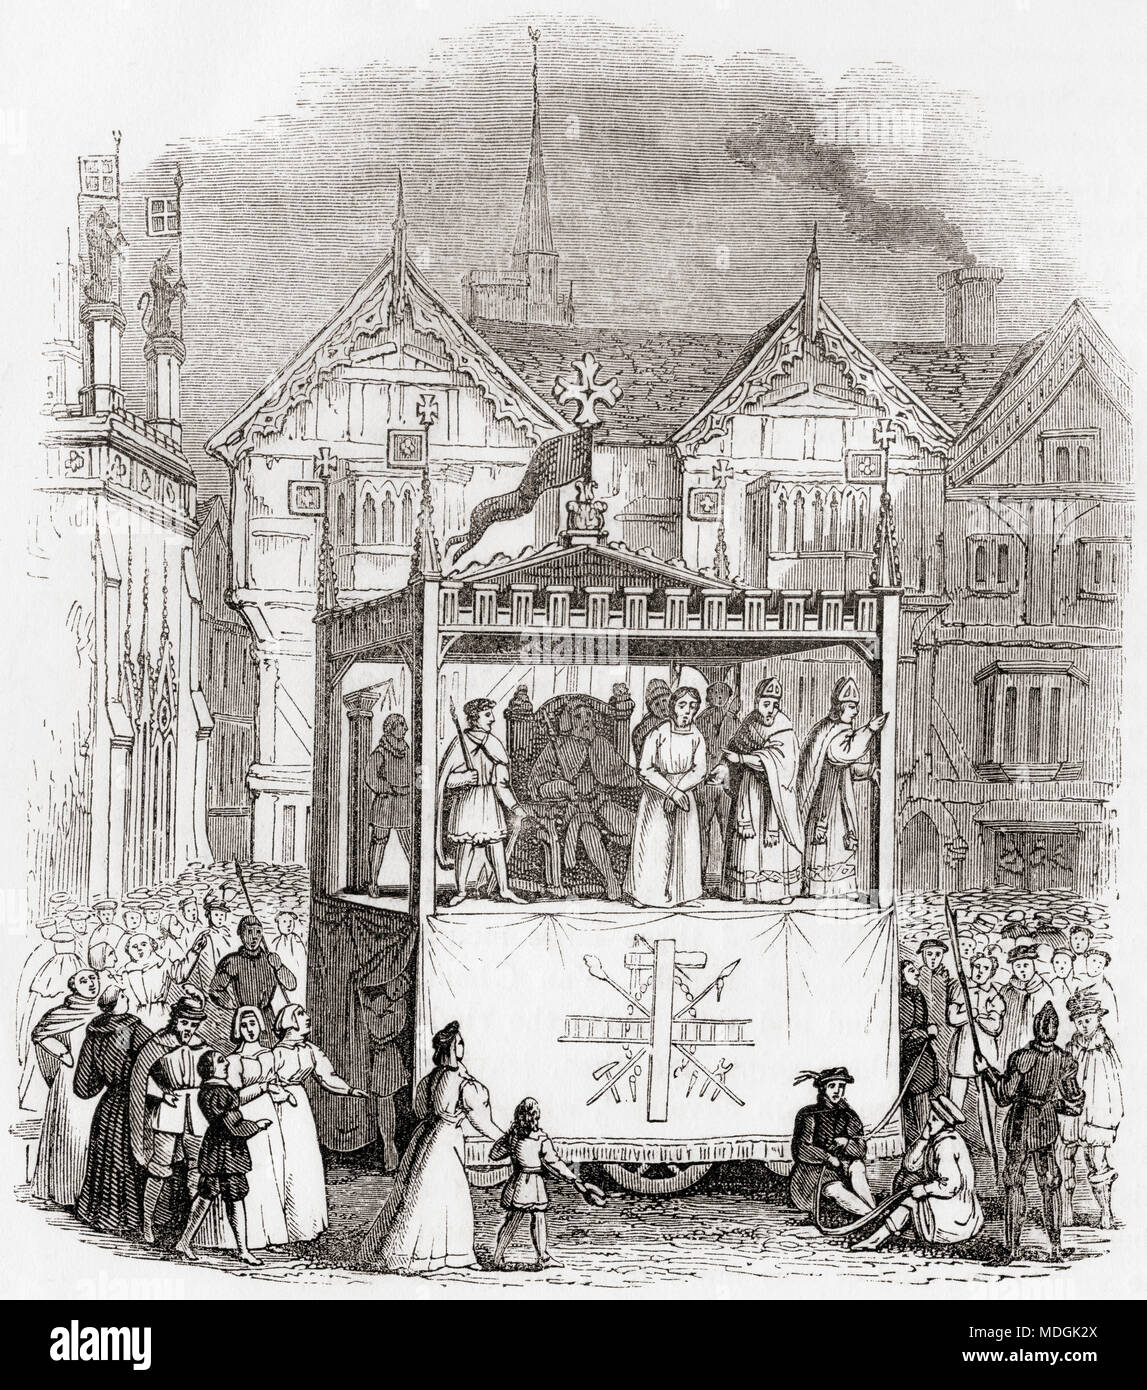 Die Leistung des 15. Jahrhunderts Passion Play - Der Prozess und Kreuzigung Christi - von der Smith Firma von Coventry. Die Schauspieler sind auf einem Pageant Wagen stand. Aus Old England: eine bildliche Museum, veröffentlicht 1847. Stockfoto